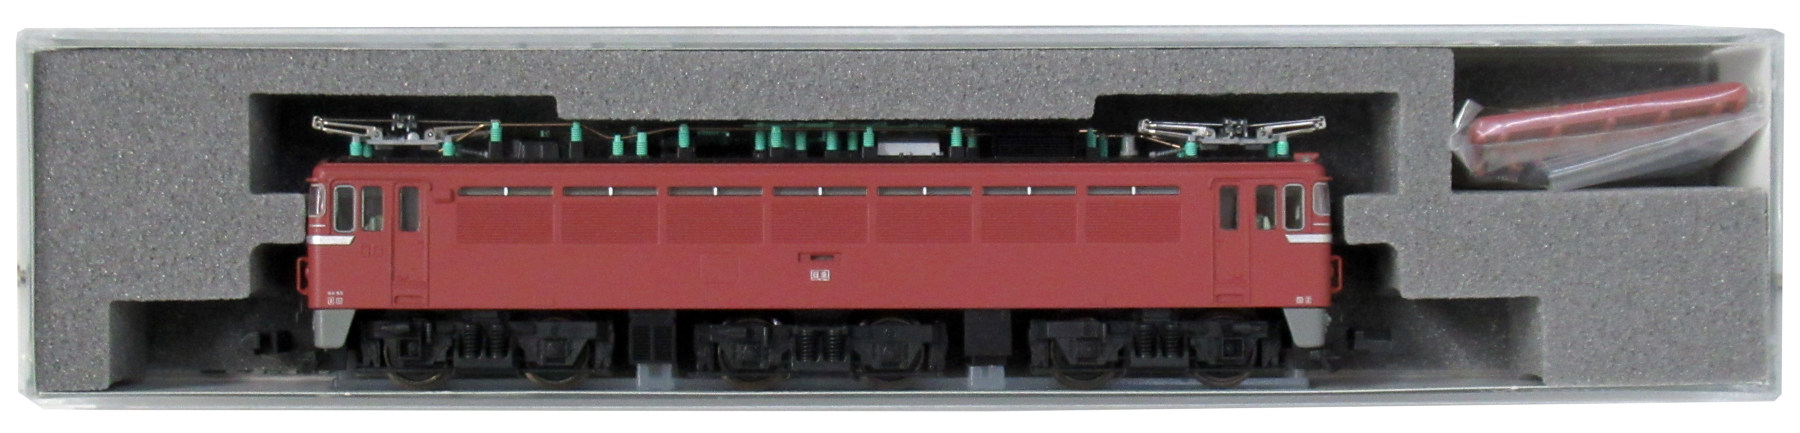 3064-1 EF80 1次形 2009年ロット